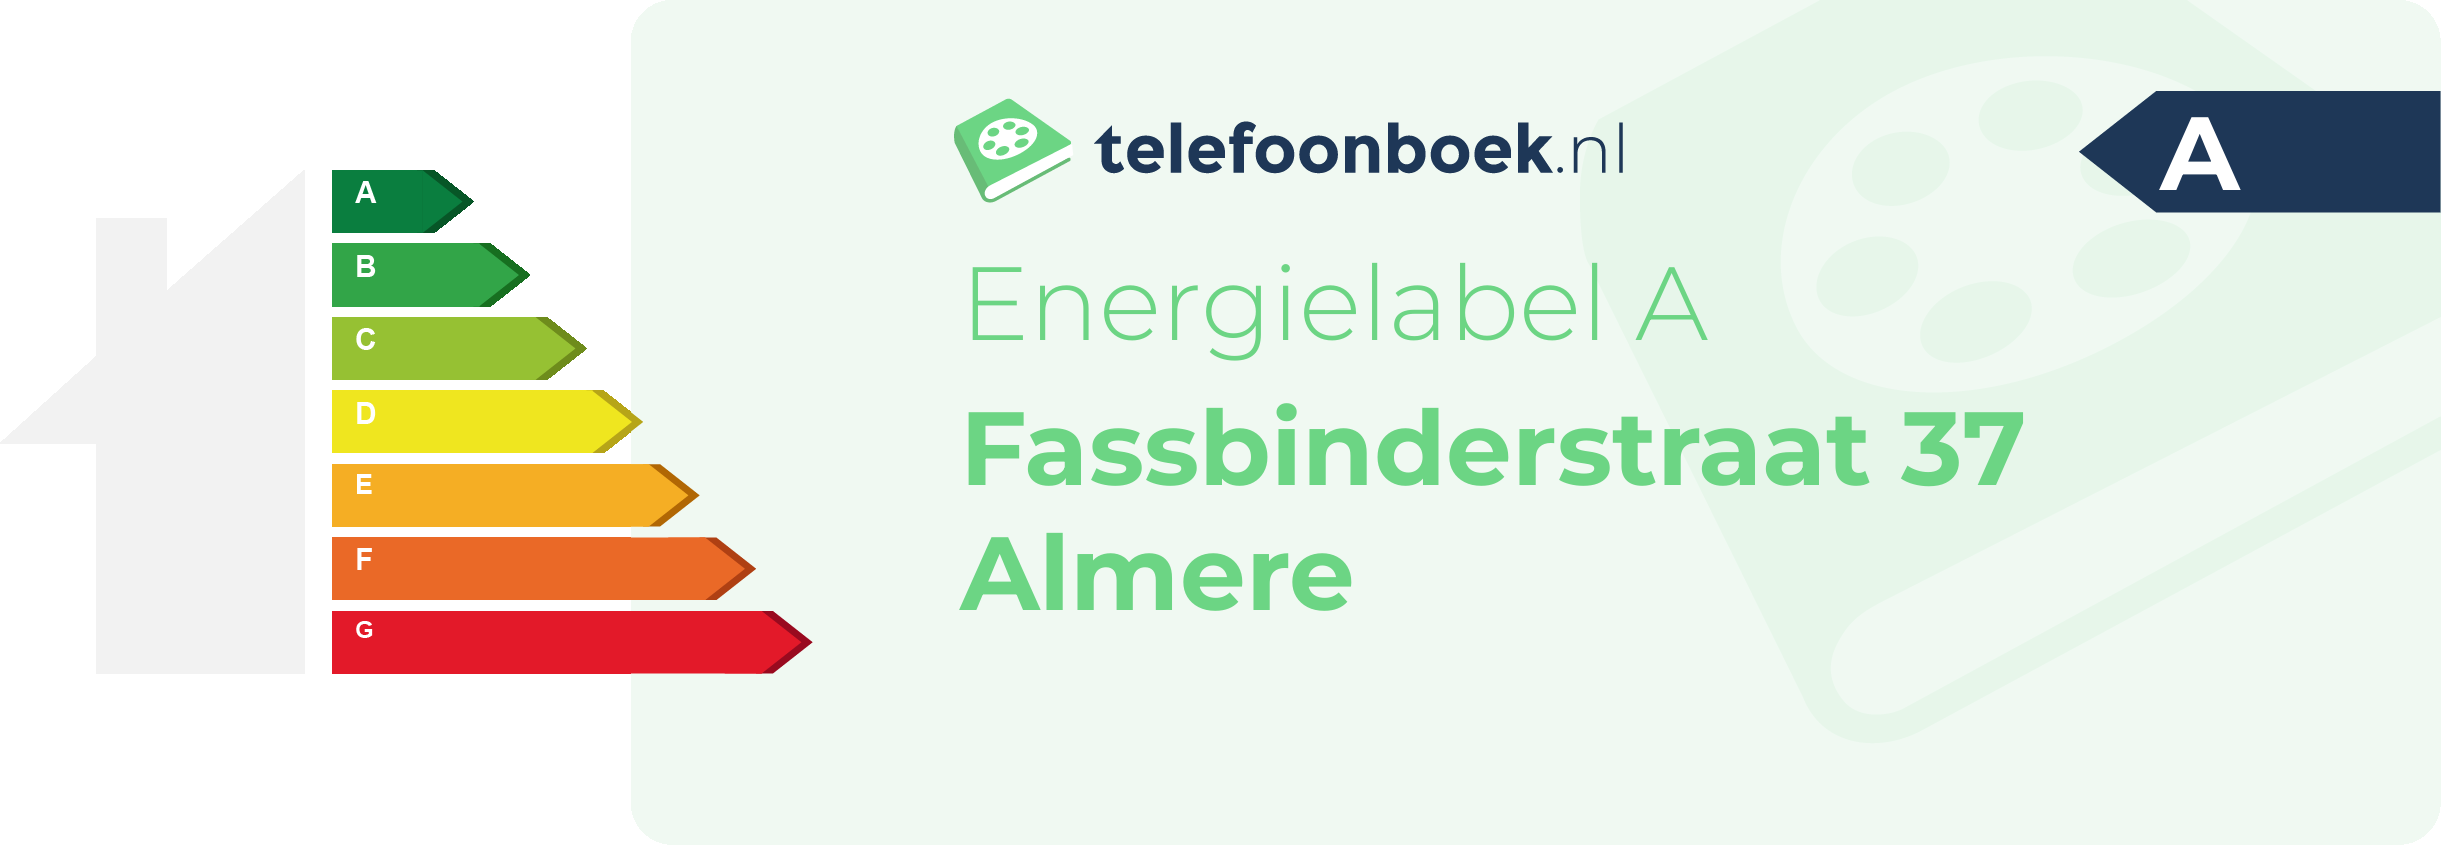 Energielabel Fassbinderstraat 37 Almere